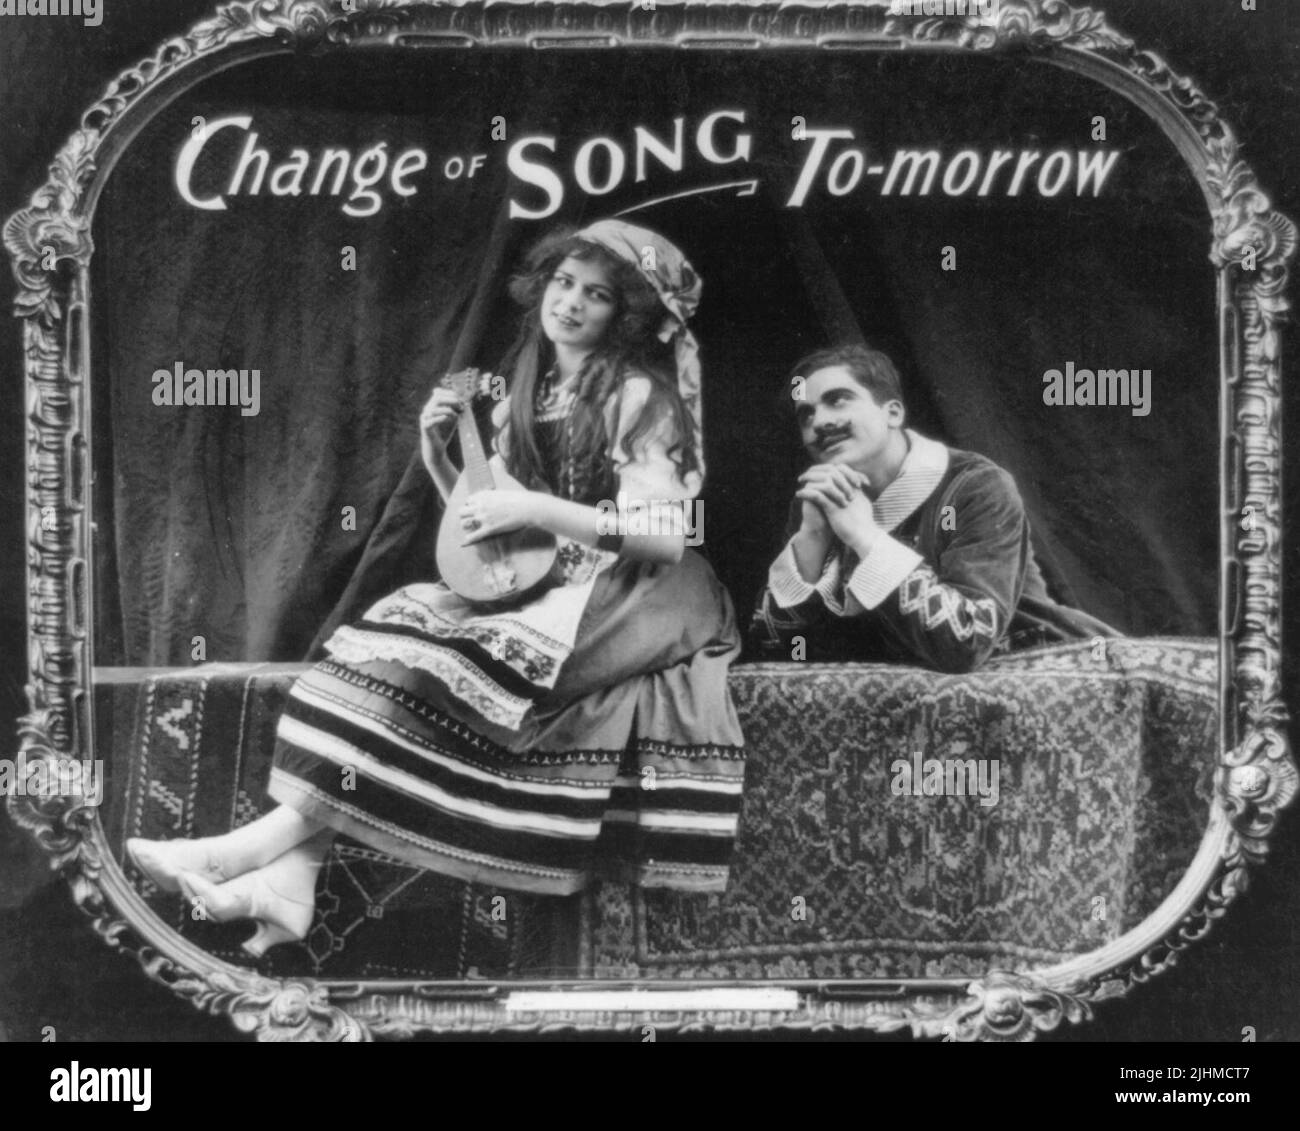 Cambio de canción mañana - La foto muestra a una mujer tocando un instrumento musical mientras un hombre la admira. Impresión en papel positiva de una diapositiva de linterna utilizada en las salas de cine como anuncio. Foto de stock